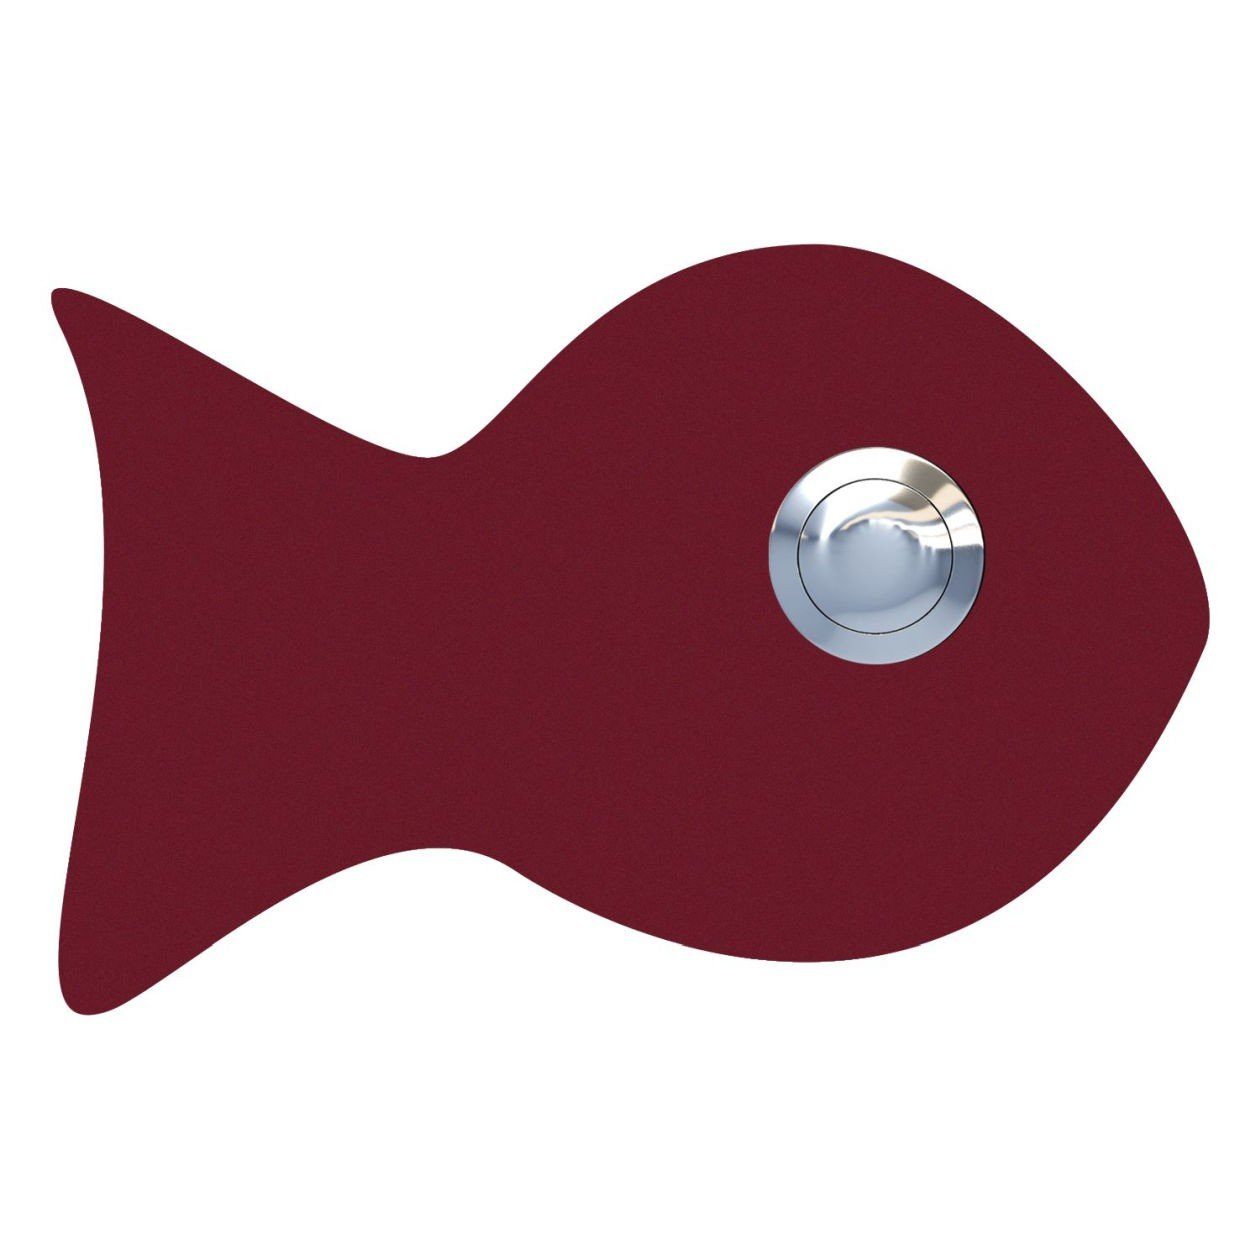 Fisch Klingeltaster Briefkasten Rot Bravios